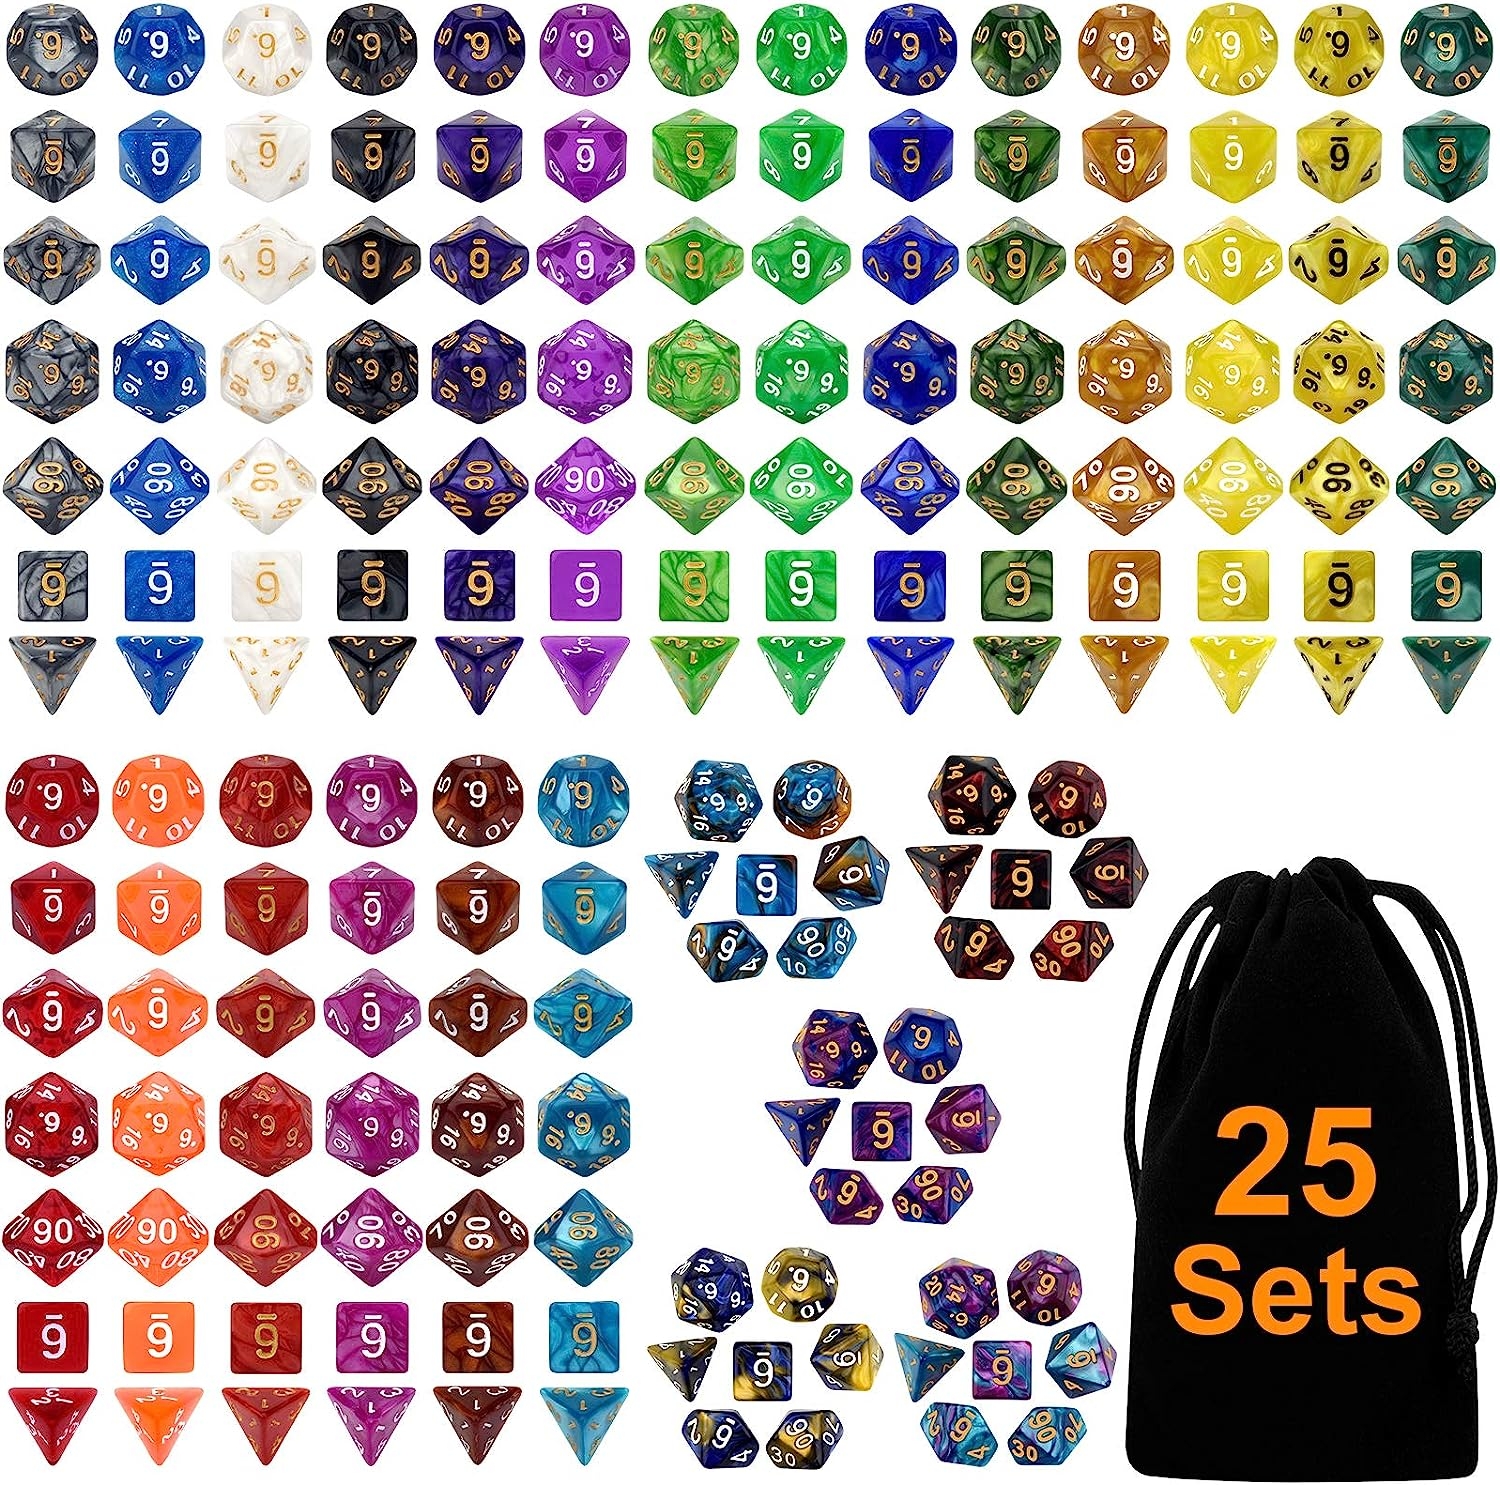 DND Double-Colors Polyhedron Dice Set for Dungeons and Dragons D&D RPG MTG Table Games D4 D6 D8 D10 D% D12 D20 25 Colors Dice